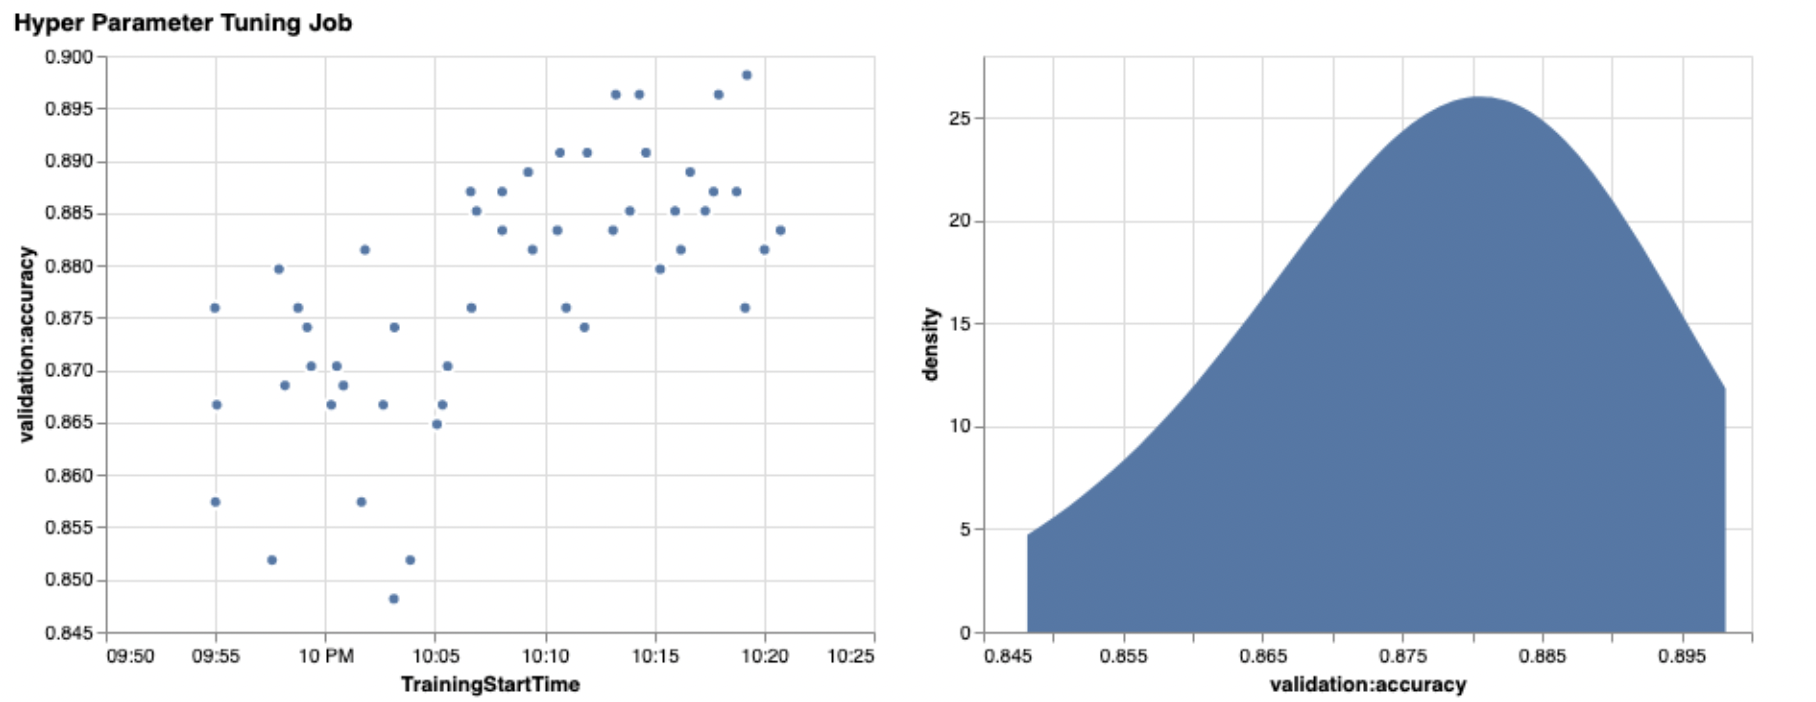 دو نمودار که مسیرهای HPO را نشان می دهد. نمودار سمت چپ دقت اعتبارسنجی را در طول زمان نشان می دهد. نمودار سمت راست نمودار چگالی را برای مقادیر دقت اعتبار سنجی نشان می دهد